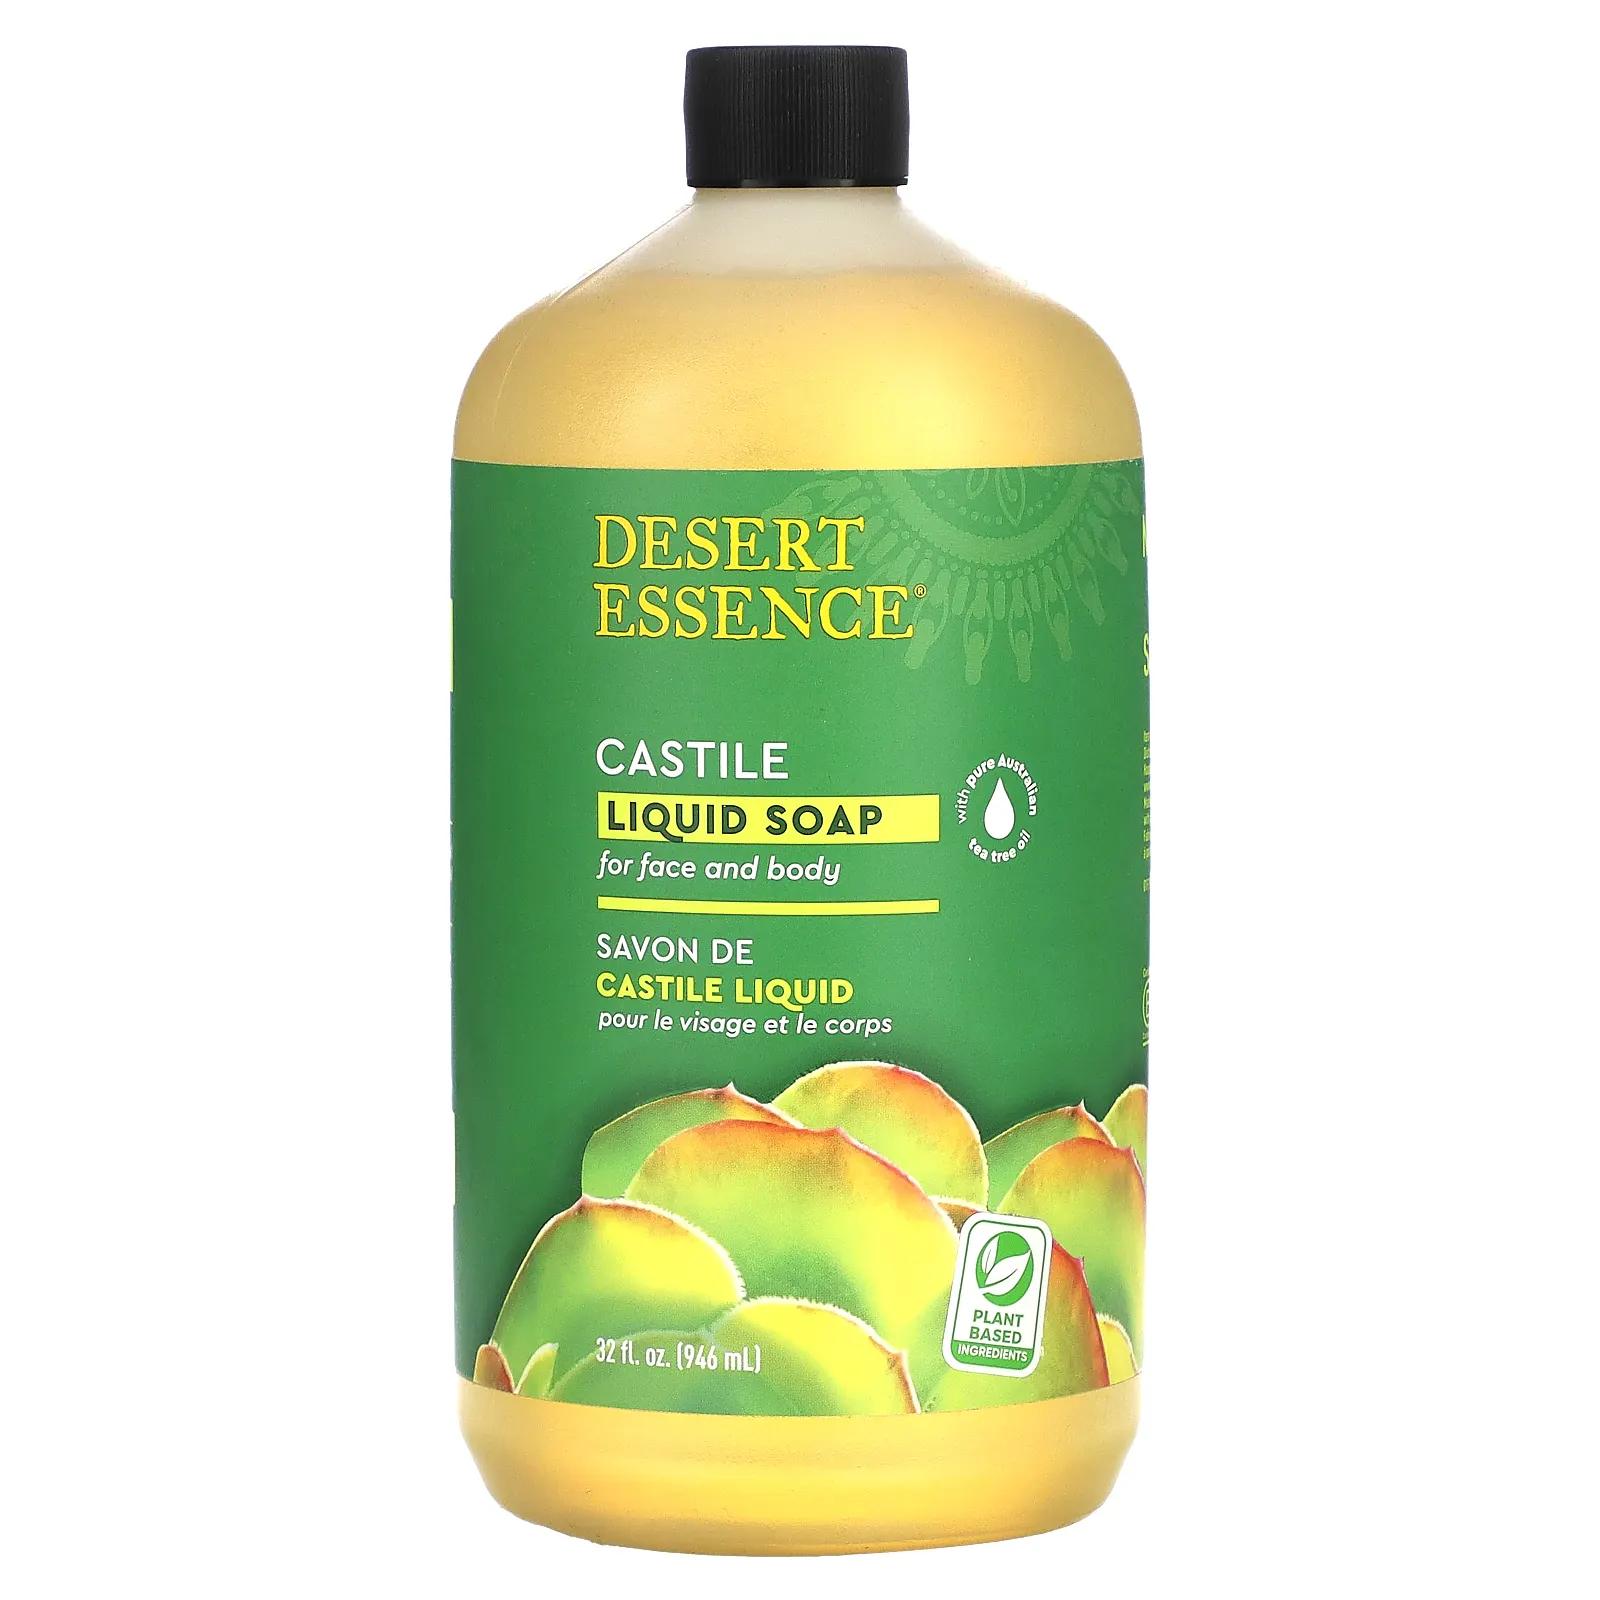 Desert Essence Кастильское жидкое мыло с экологически чистым маслом чайного дерева 32 жидких унции (960 мл) desert essence кастильское жидкое мыло 946 мл 32 жидк унции